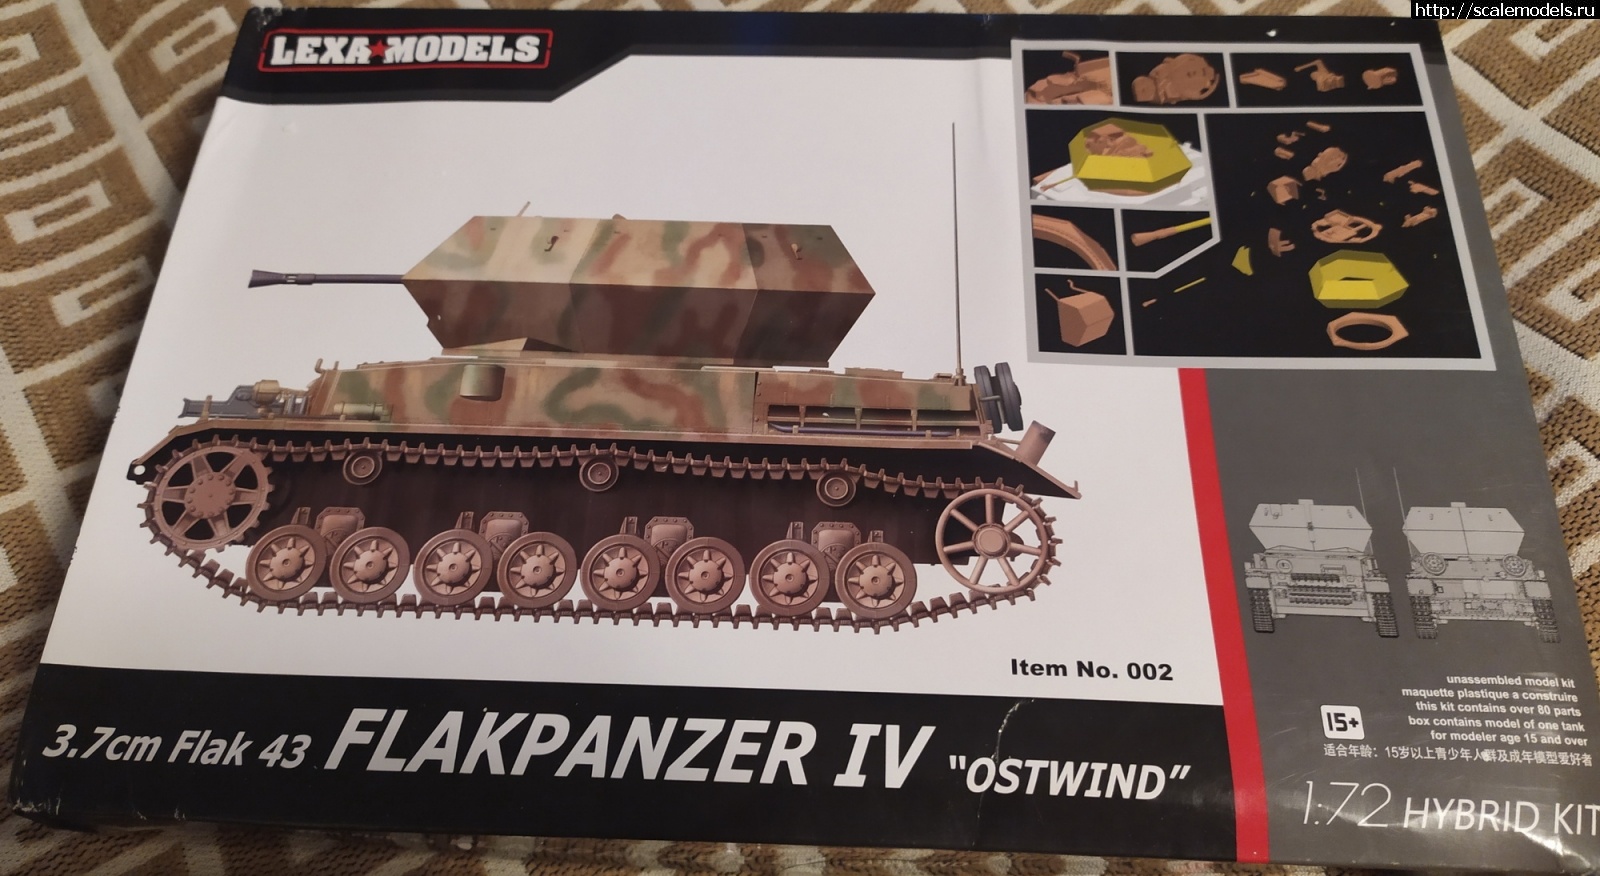  FT-17  flakpanzer IV "ostwind" 1/72    